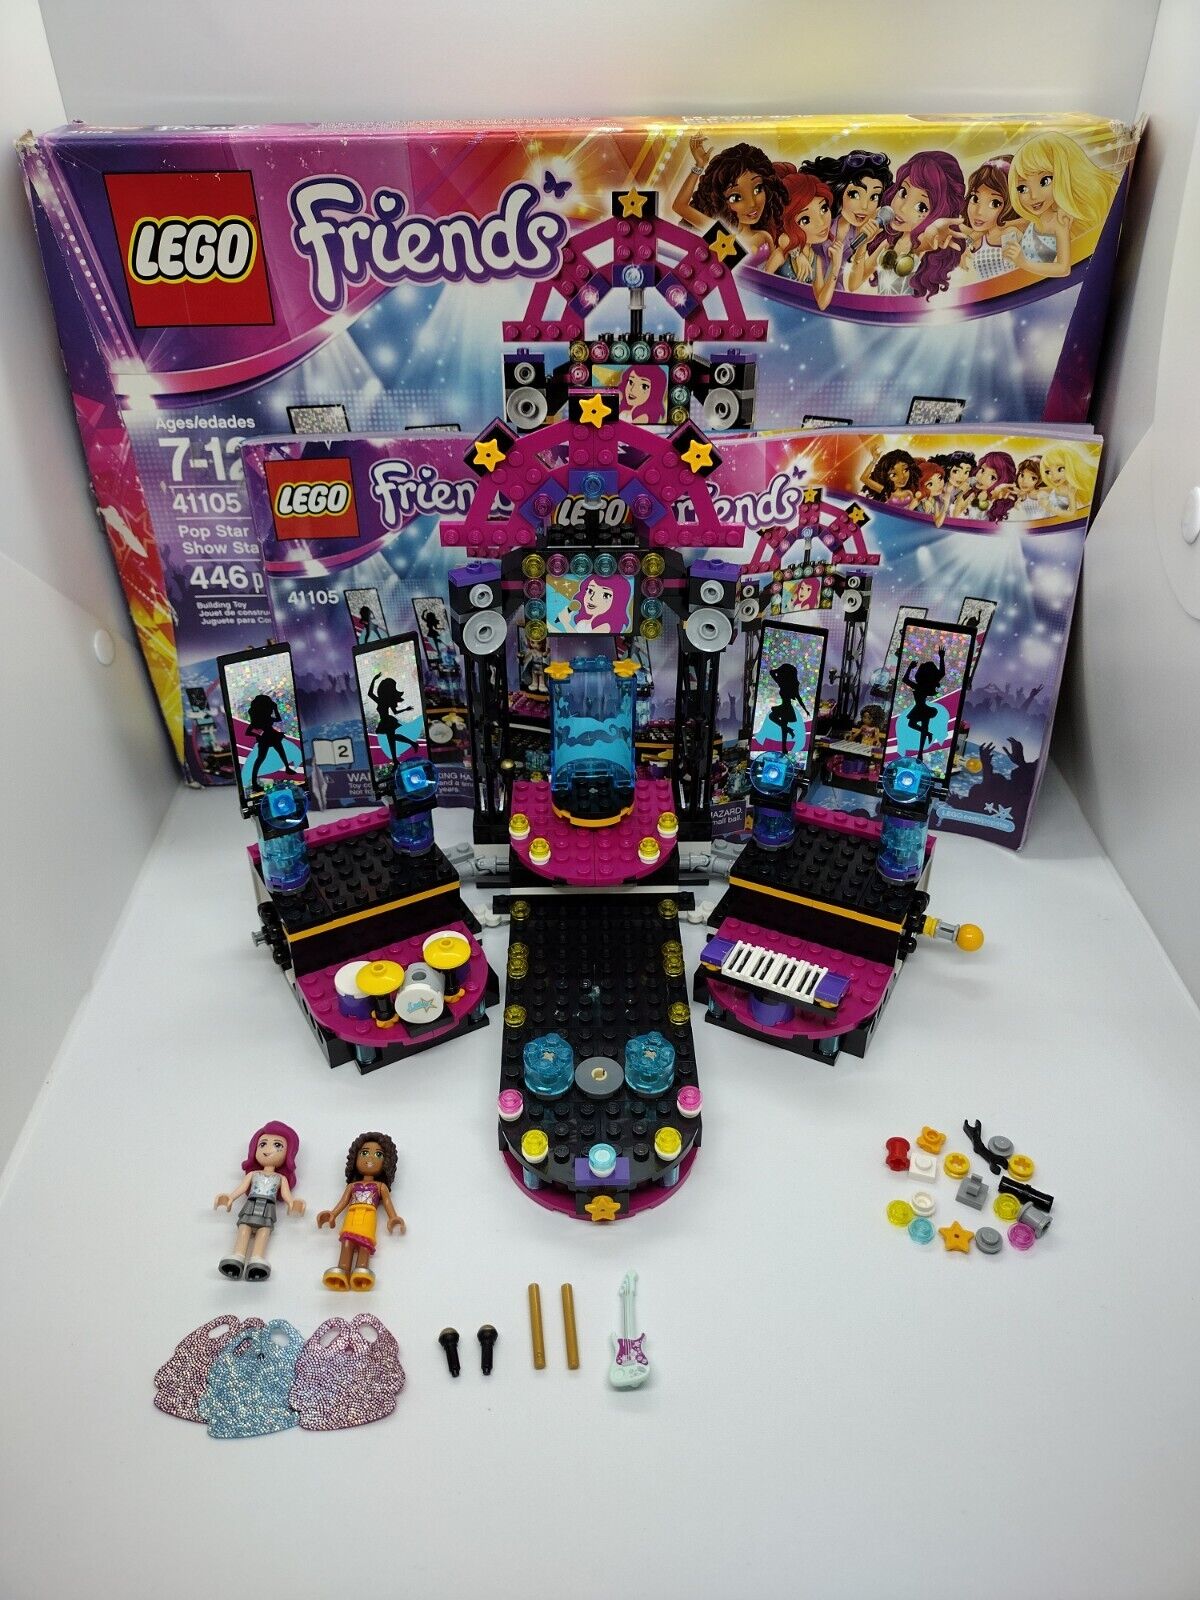 knap terning Almindeligt LEGO FRIENDS 41105 Pop Star Show Stage set w/ instructions + box, 100%  complete | eBay